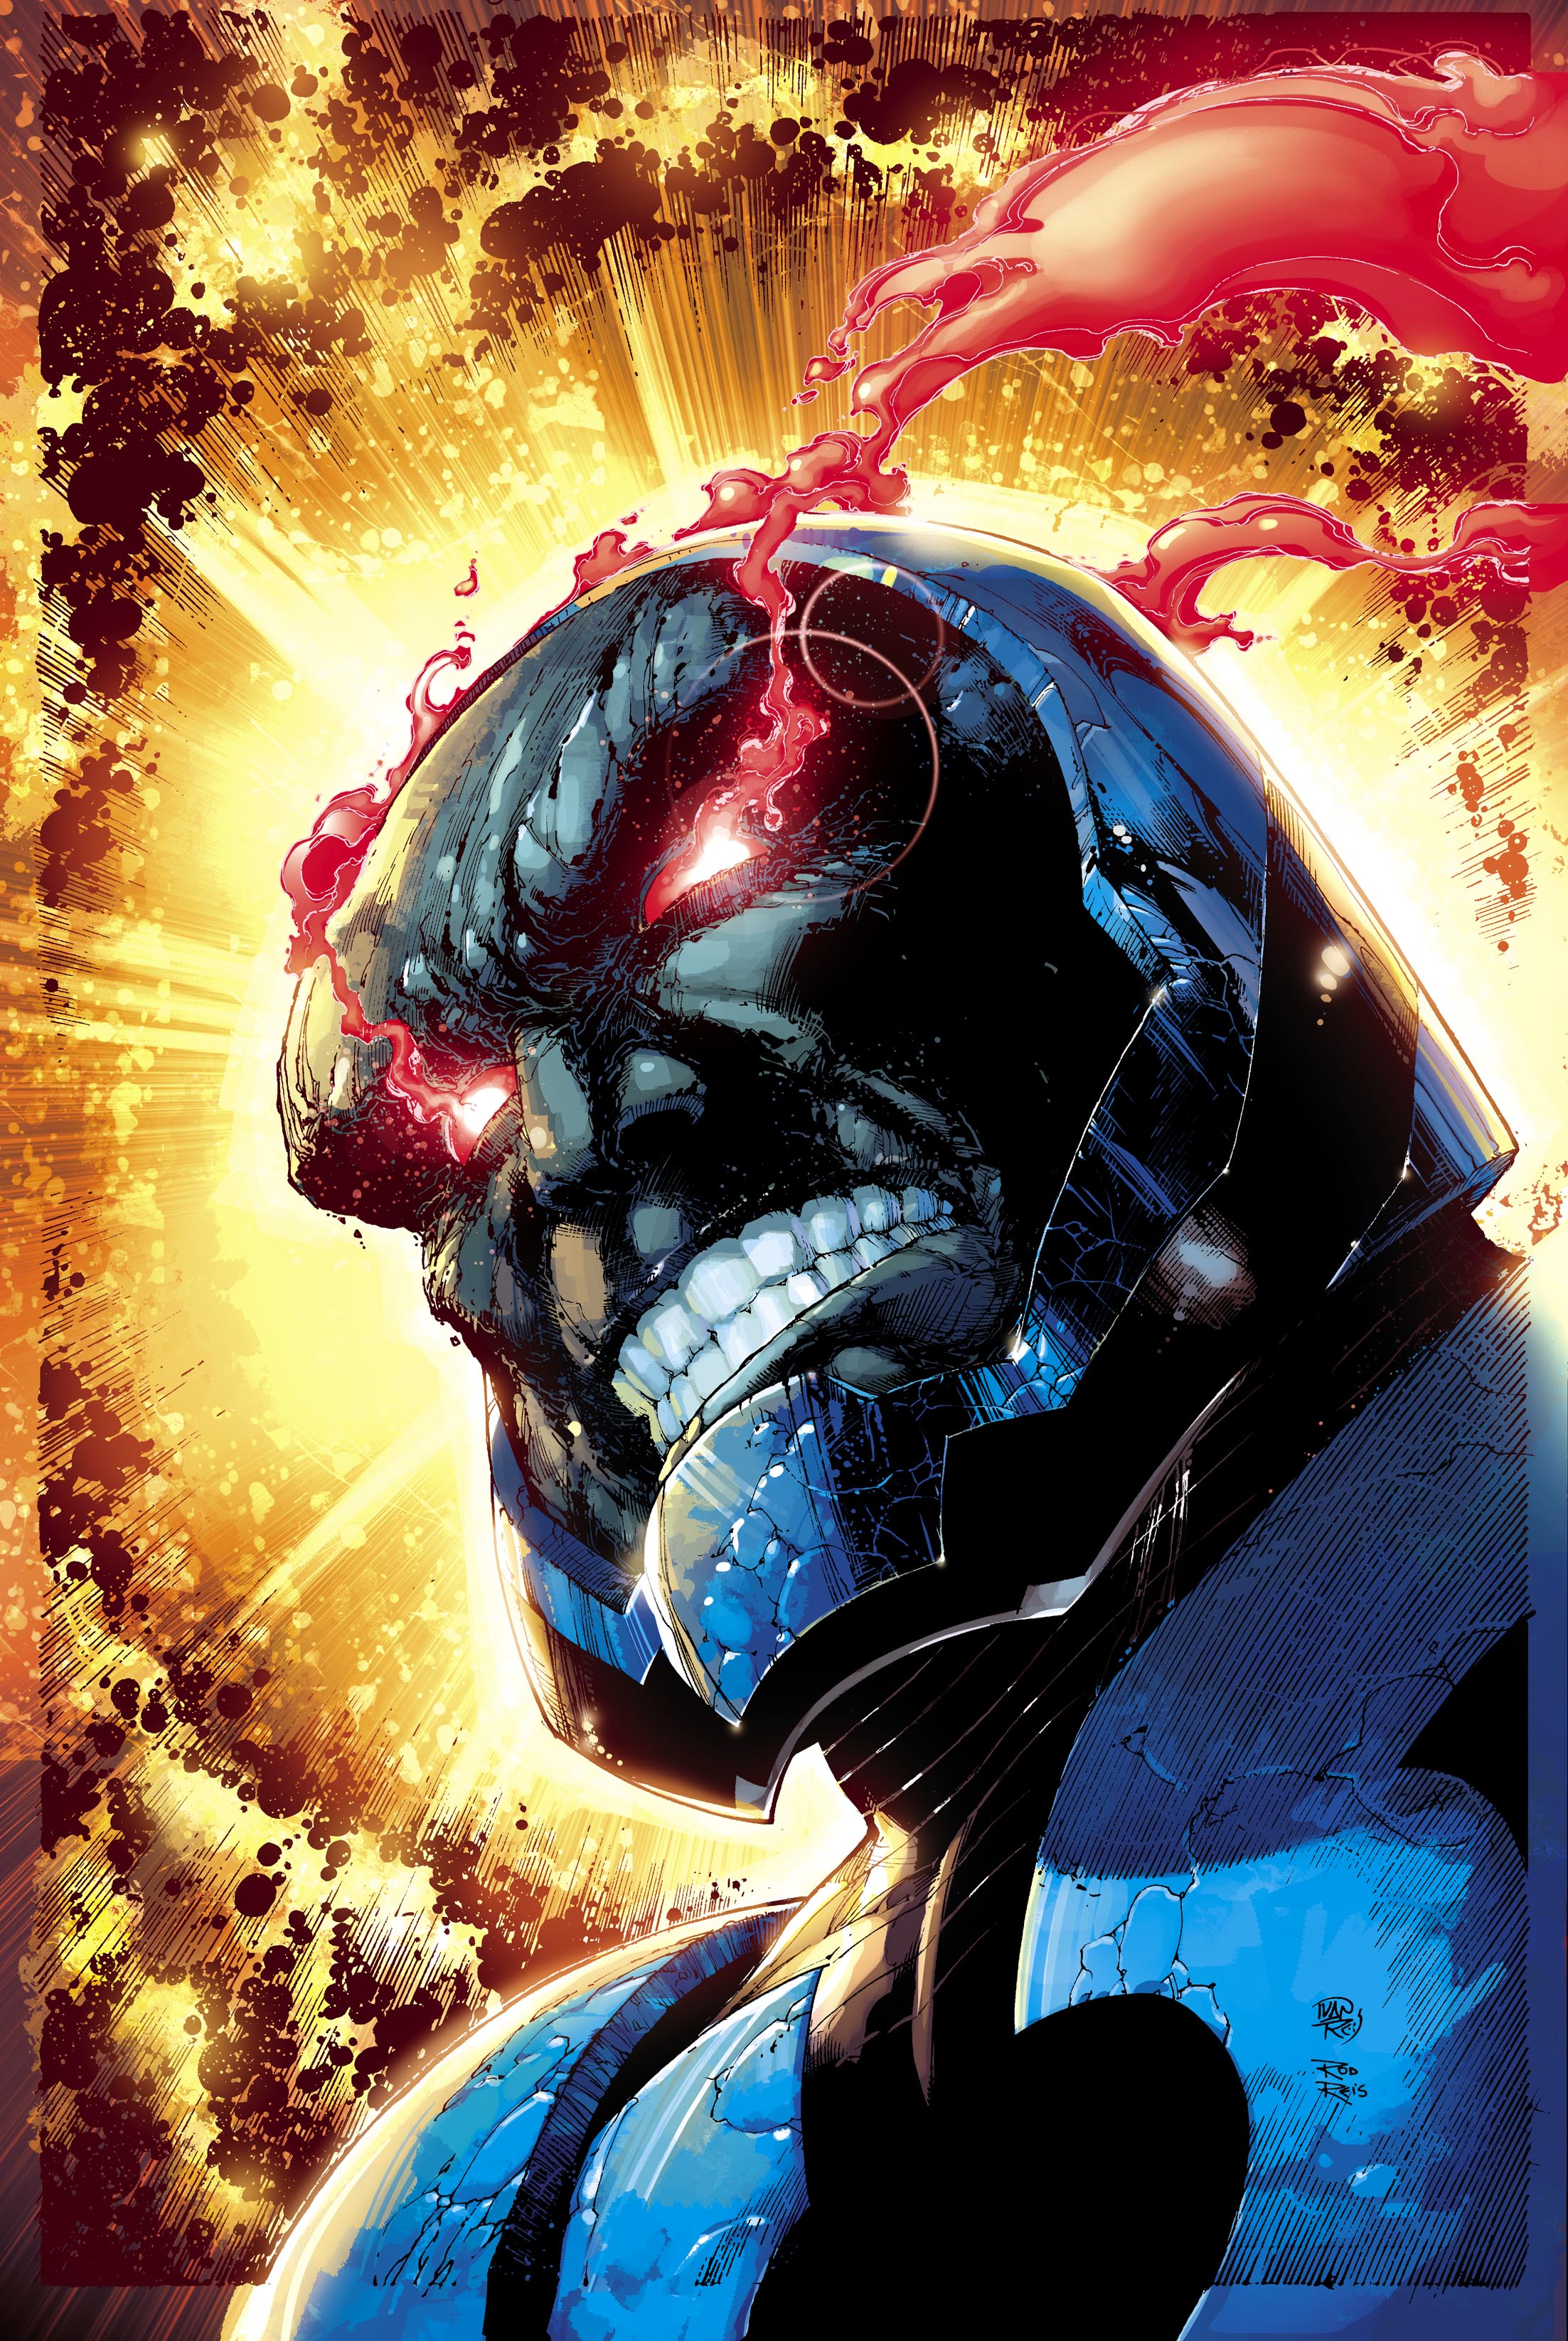 達克賽德(Darkseid)